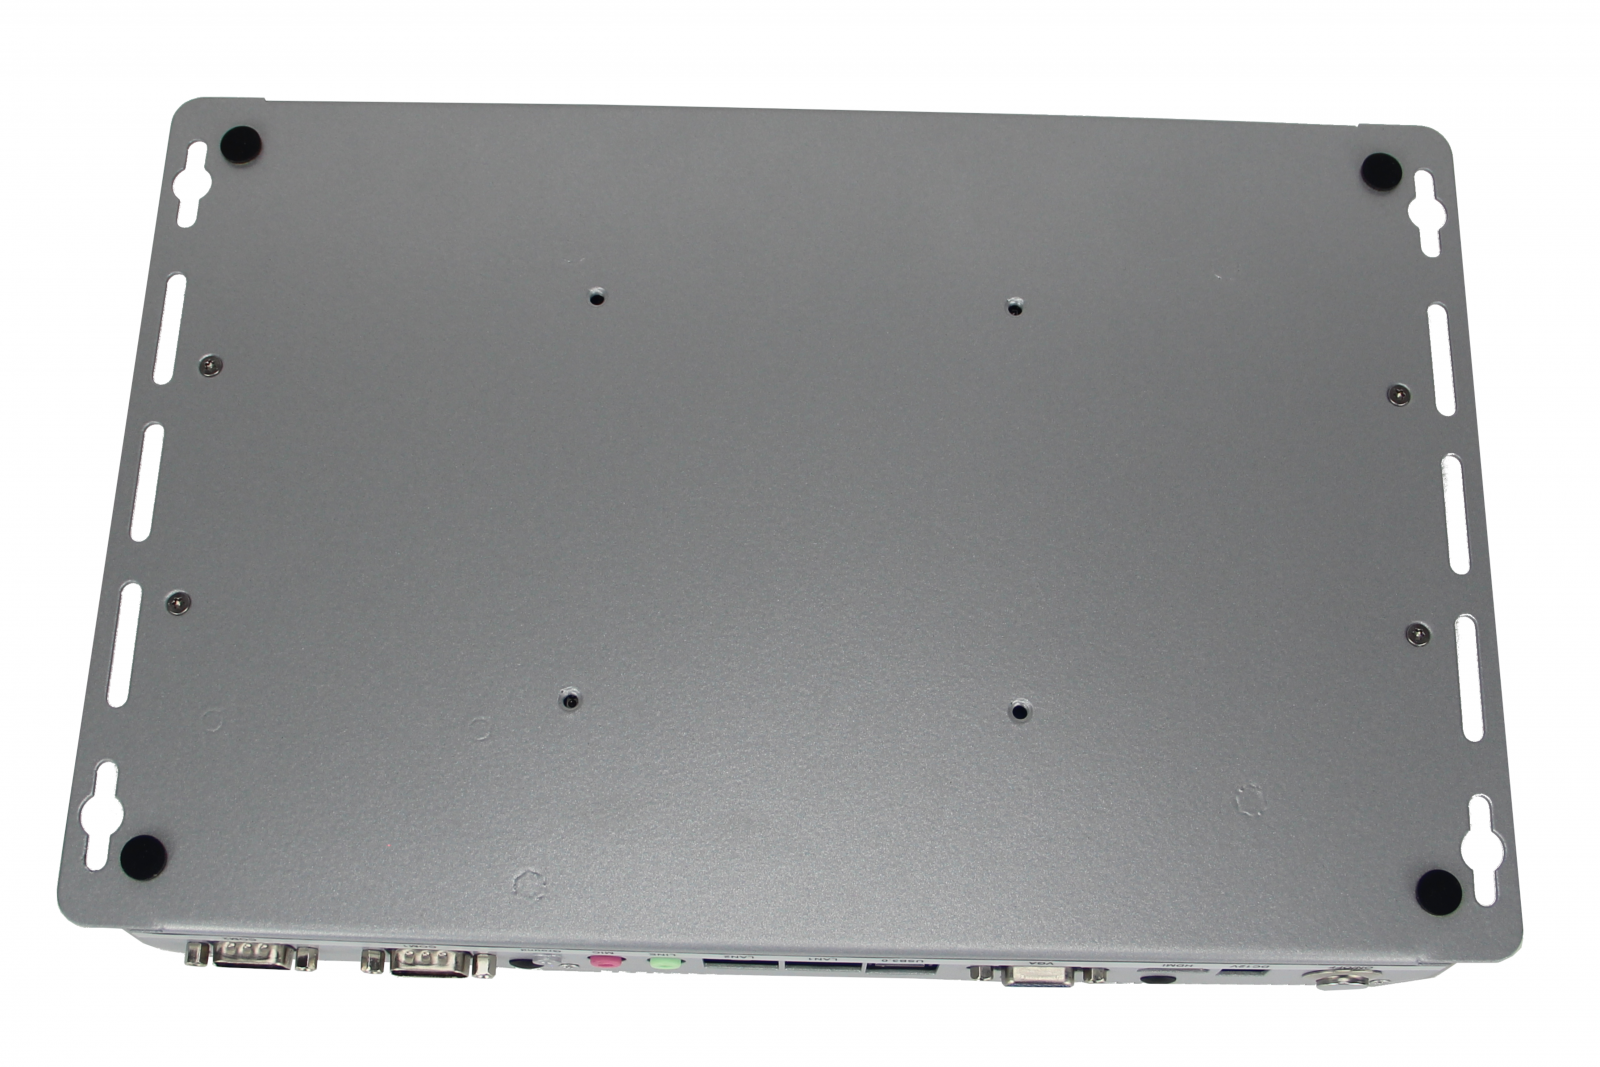 Minimaker BBPC-K04 (i5-6200U) - Przemysowy wzmocniony may komputer - Procesor Inter Core i5, 2x LAN RJ45 oraz 6x COM RS232